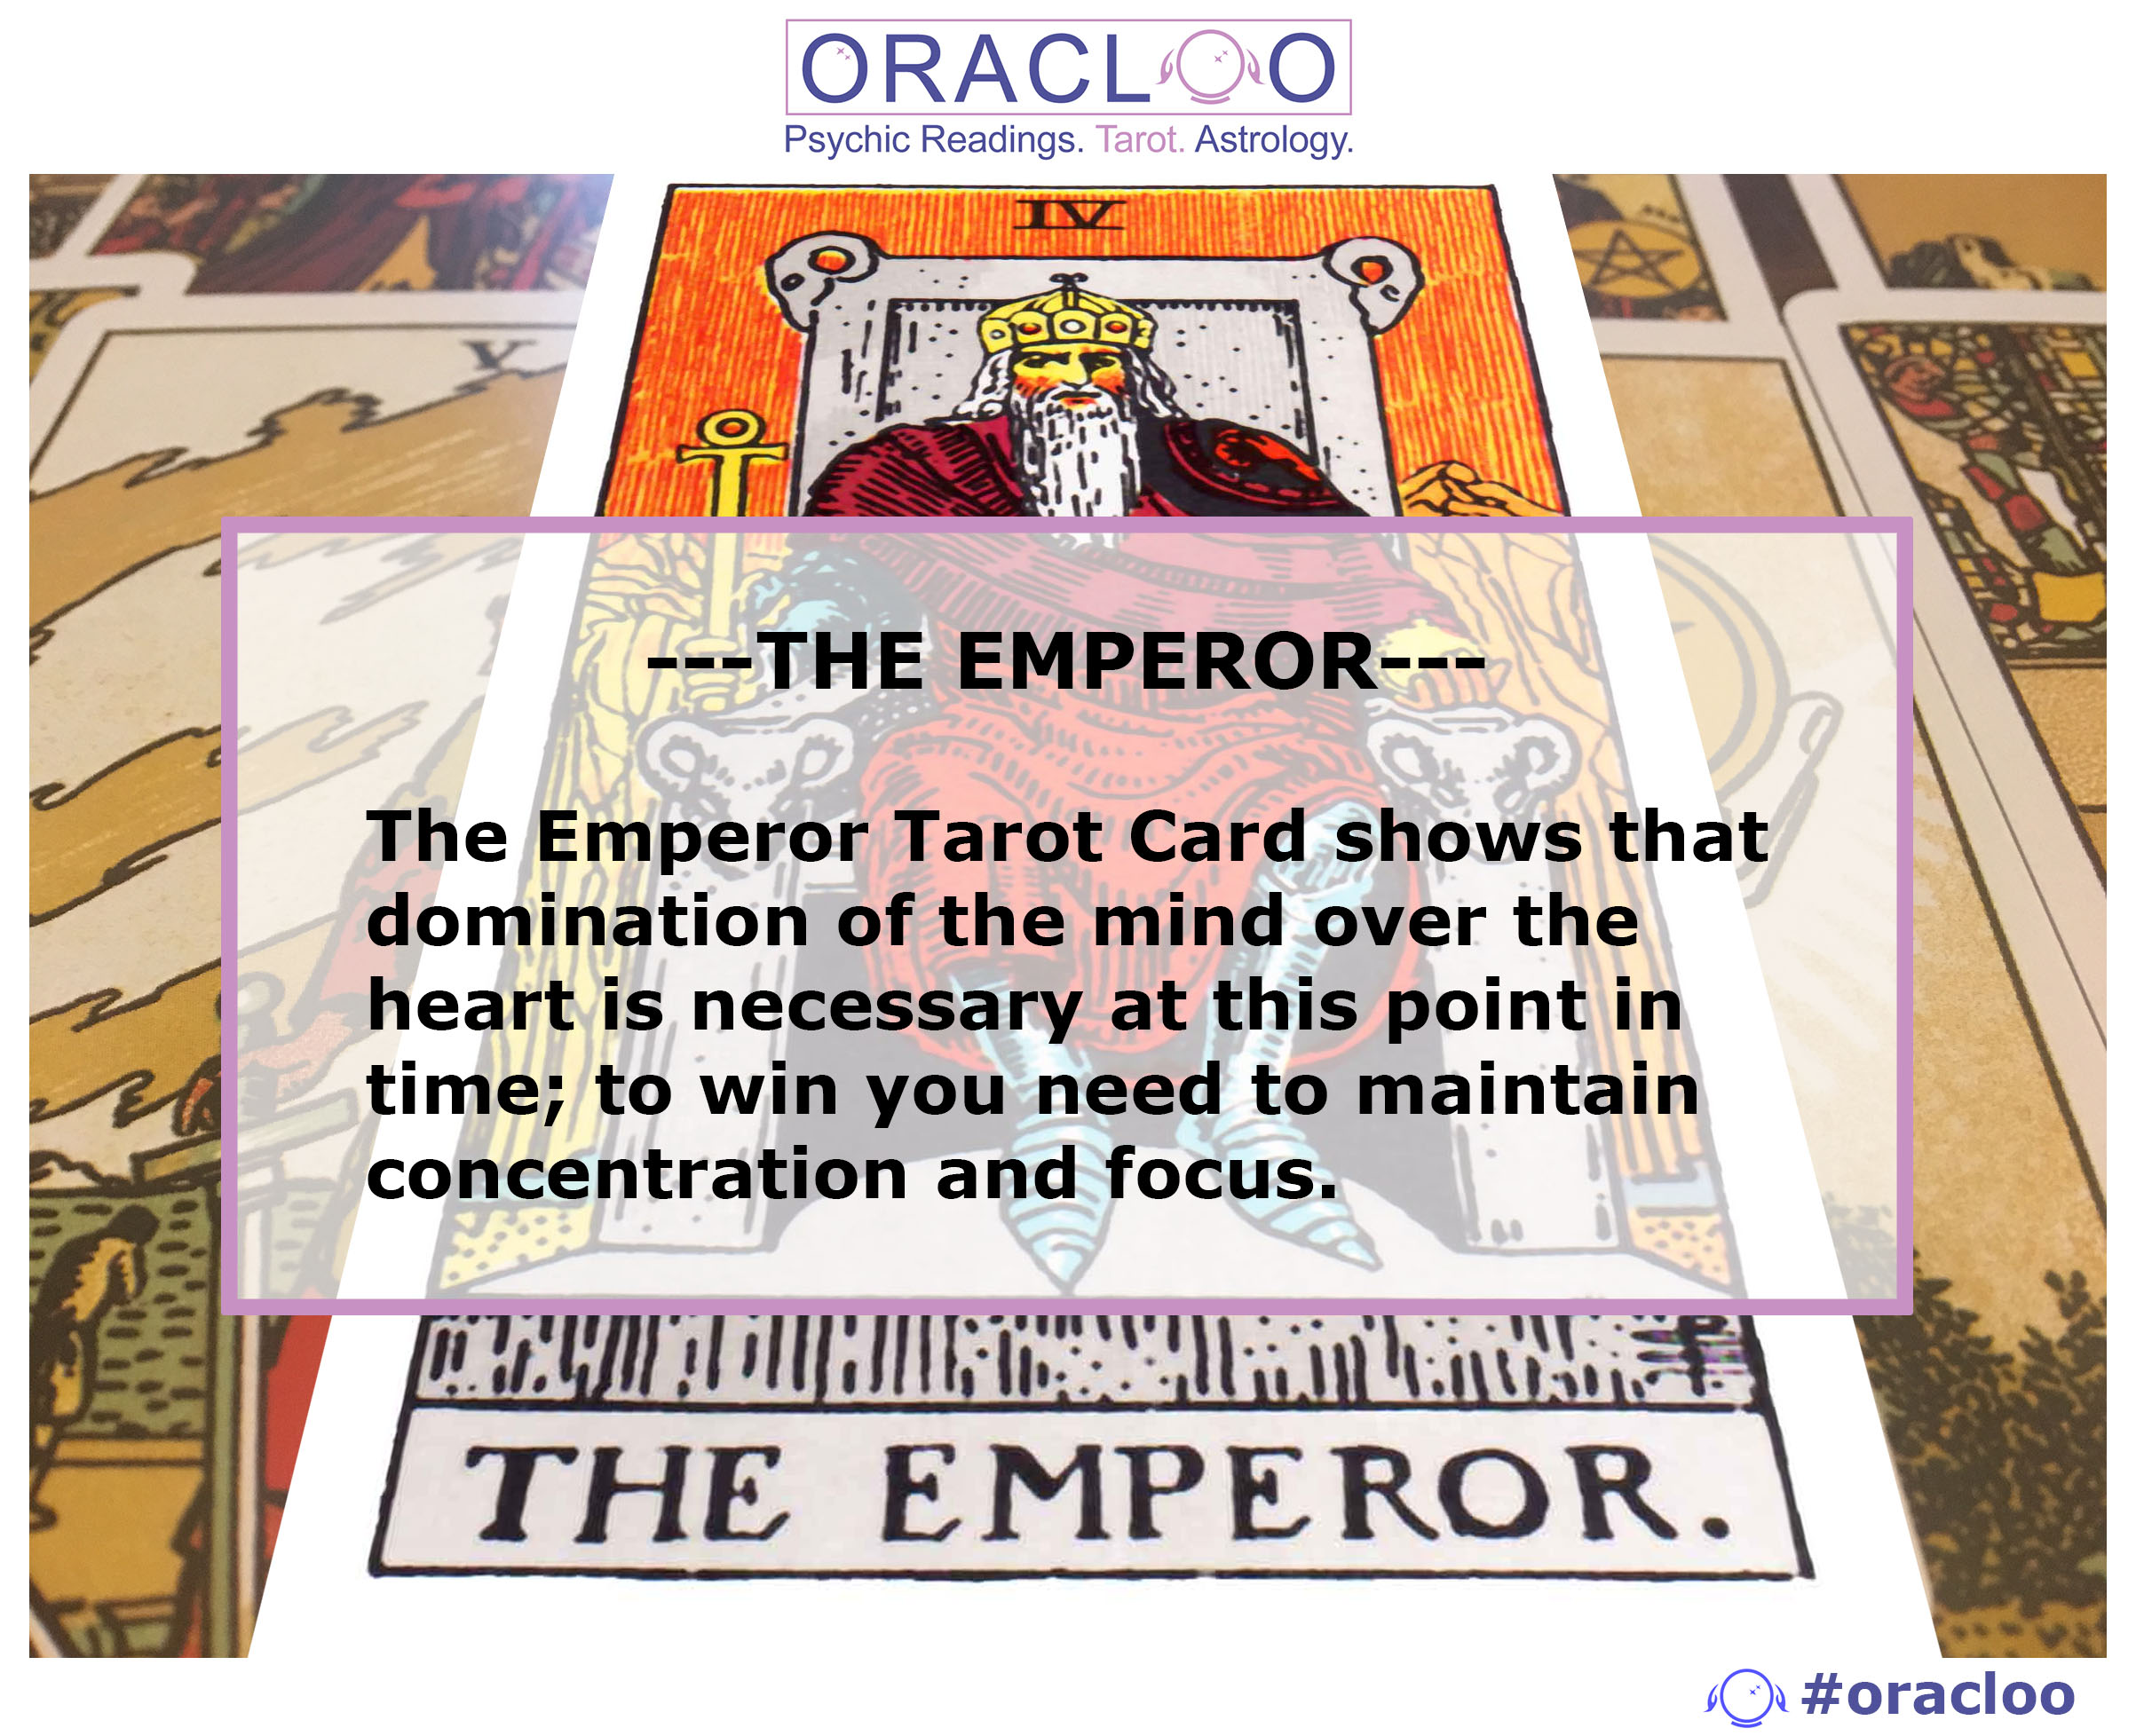 THE EMPEROR tarot card